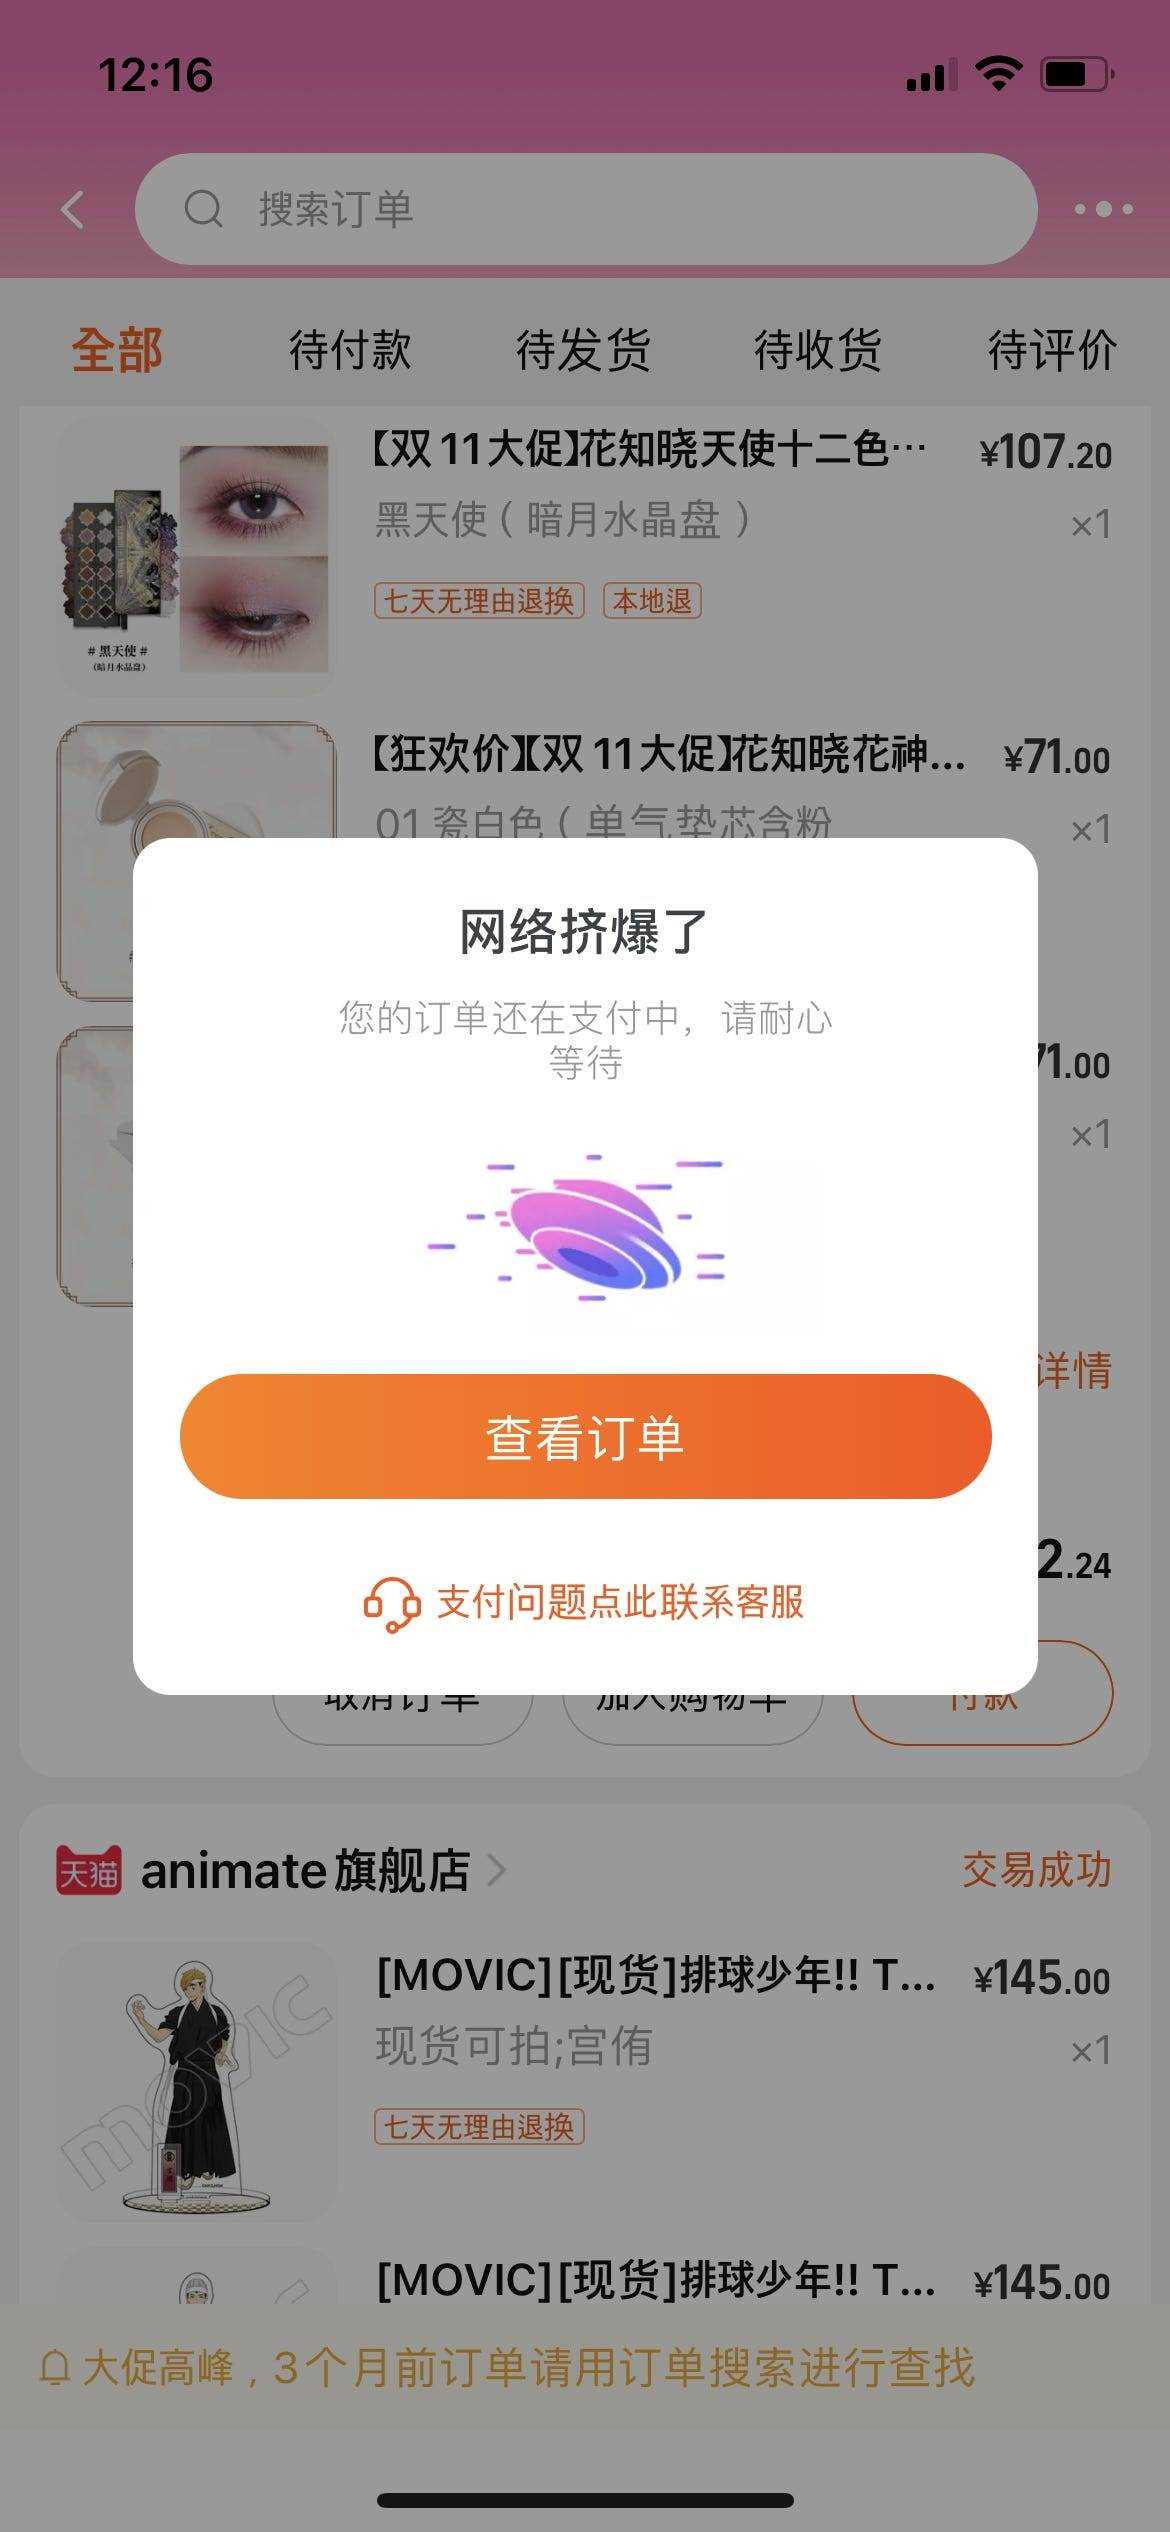 Alibabas mobile Shopping-Seite Taobao am 11. November 2021.